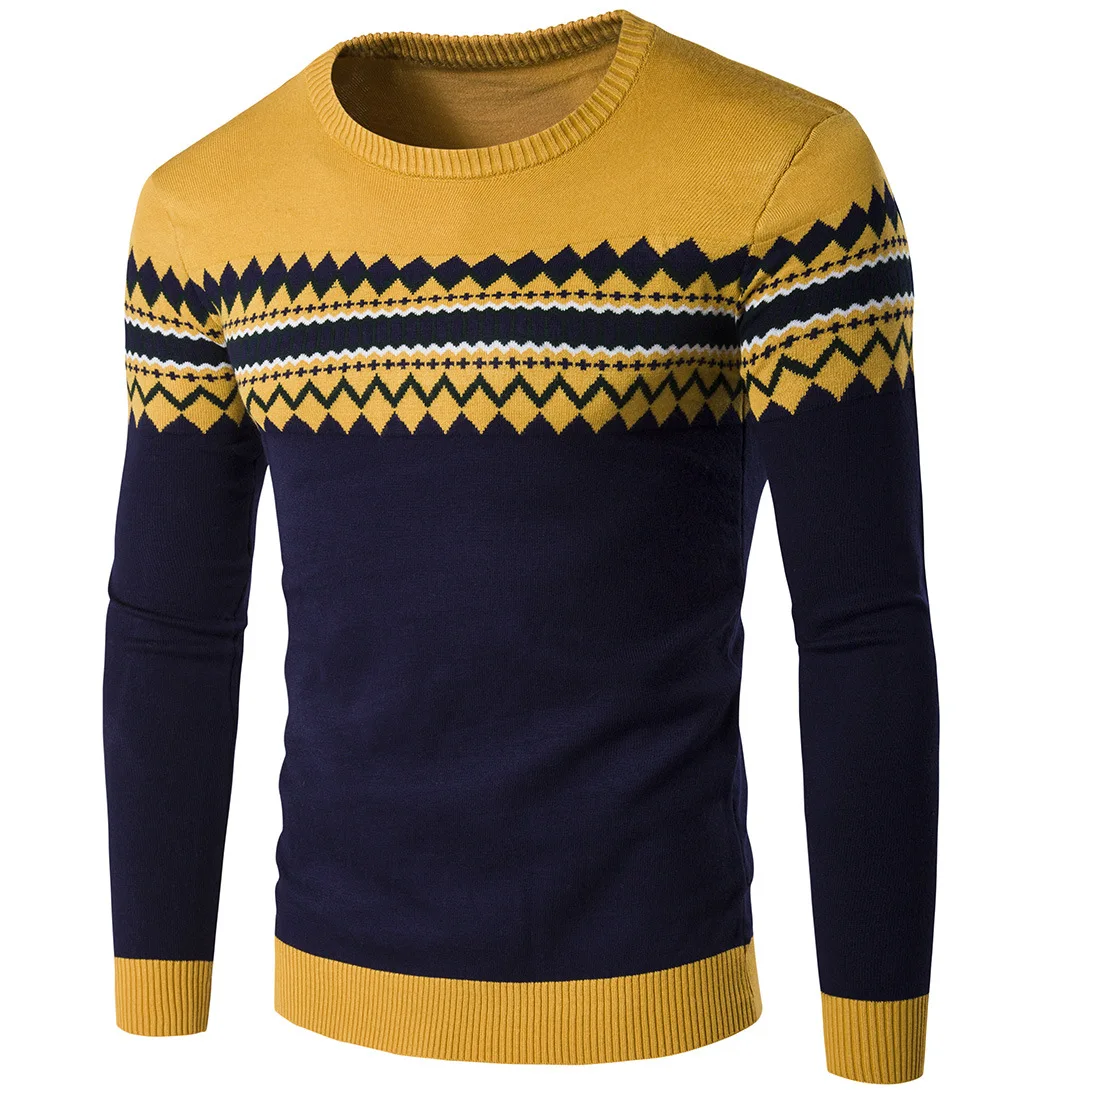 Для мужчин свитер 2019 Новый осень-зима мужские свитера хлопок Повседневное с круглым вырезом свитер Джемперы тонкий мужской трикотаж Топ